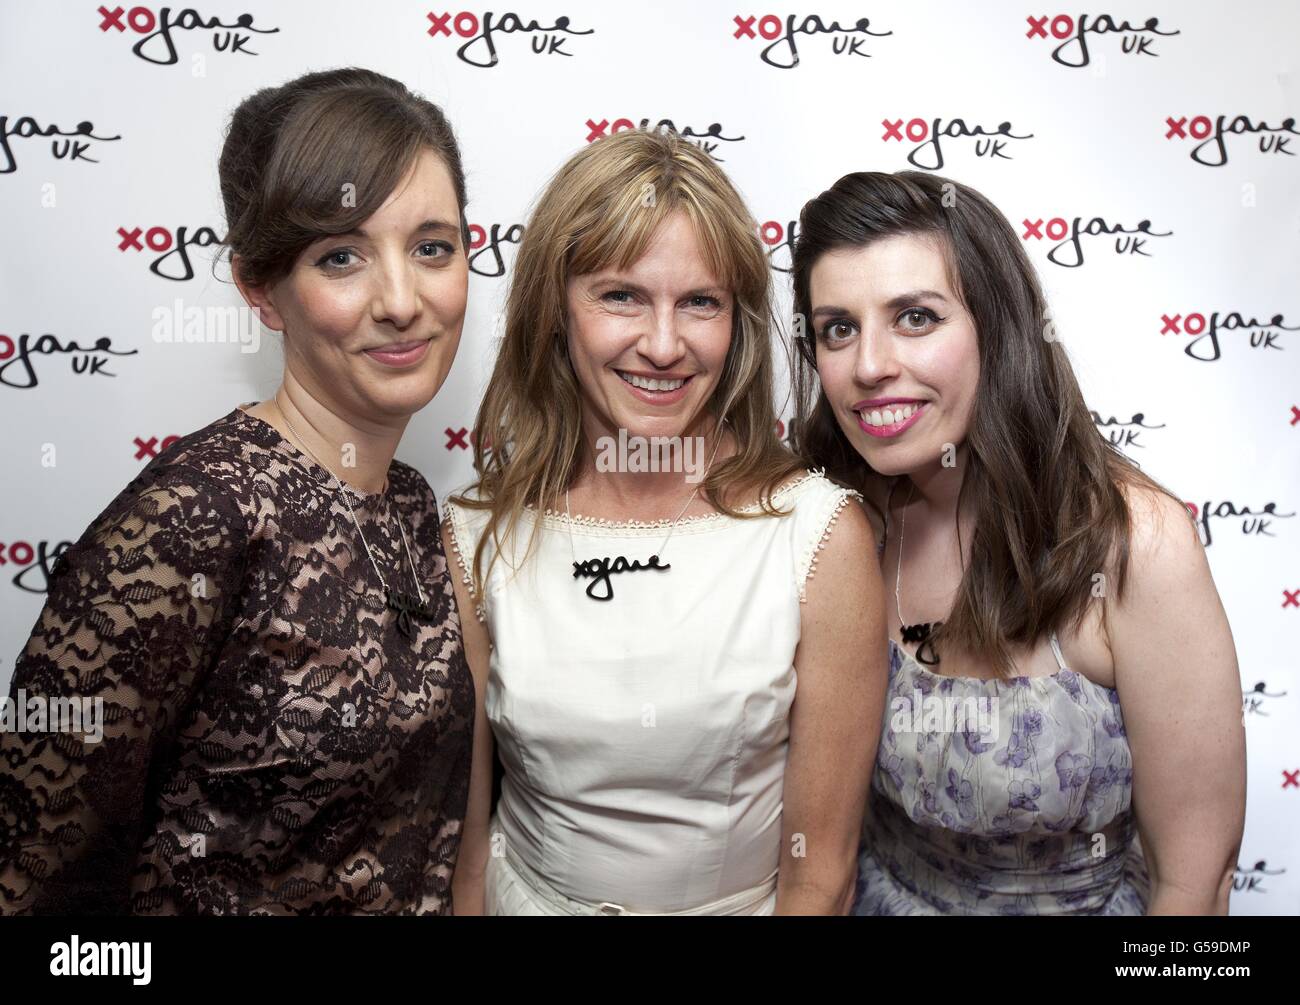 (À partir de la gauche) Rebecca Holman xoJaneUK Editor, Jane Pratt et Phoebe Frangoul xoJaneUK Fashion and Beauty Editor, assistent au lancement de la version britannique de xoJane, un magazine féminin en ligne réussi au Lucky Pig, Londres. Banque D'Images